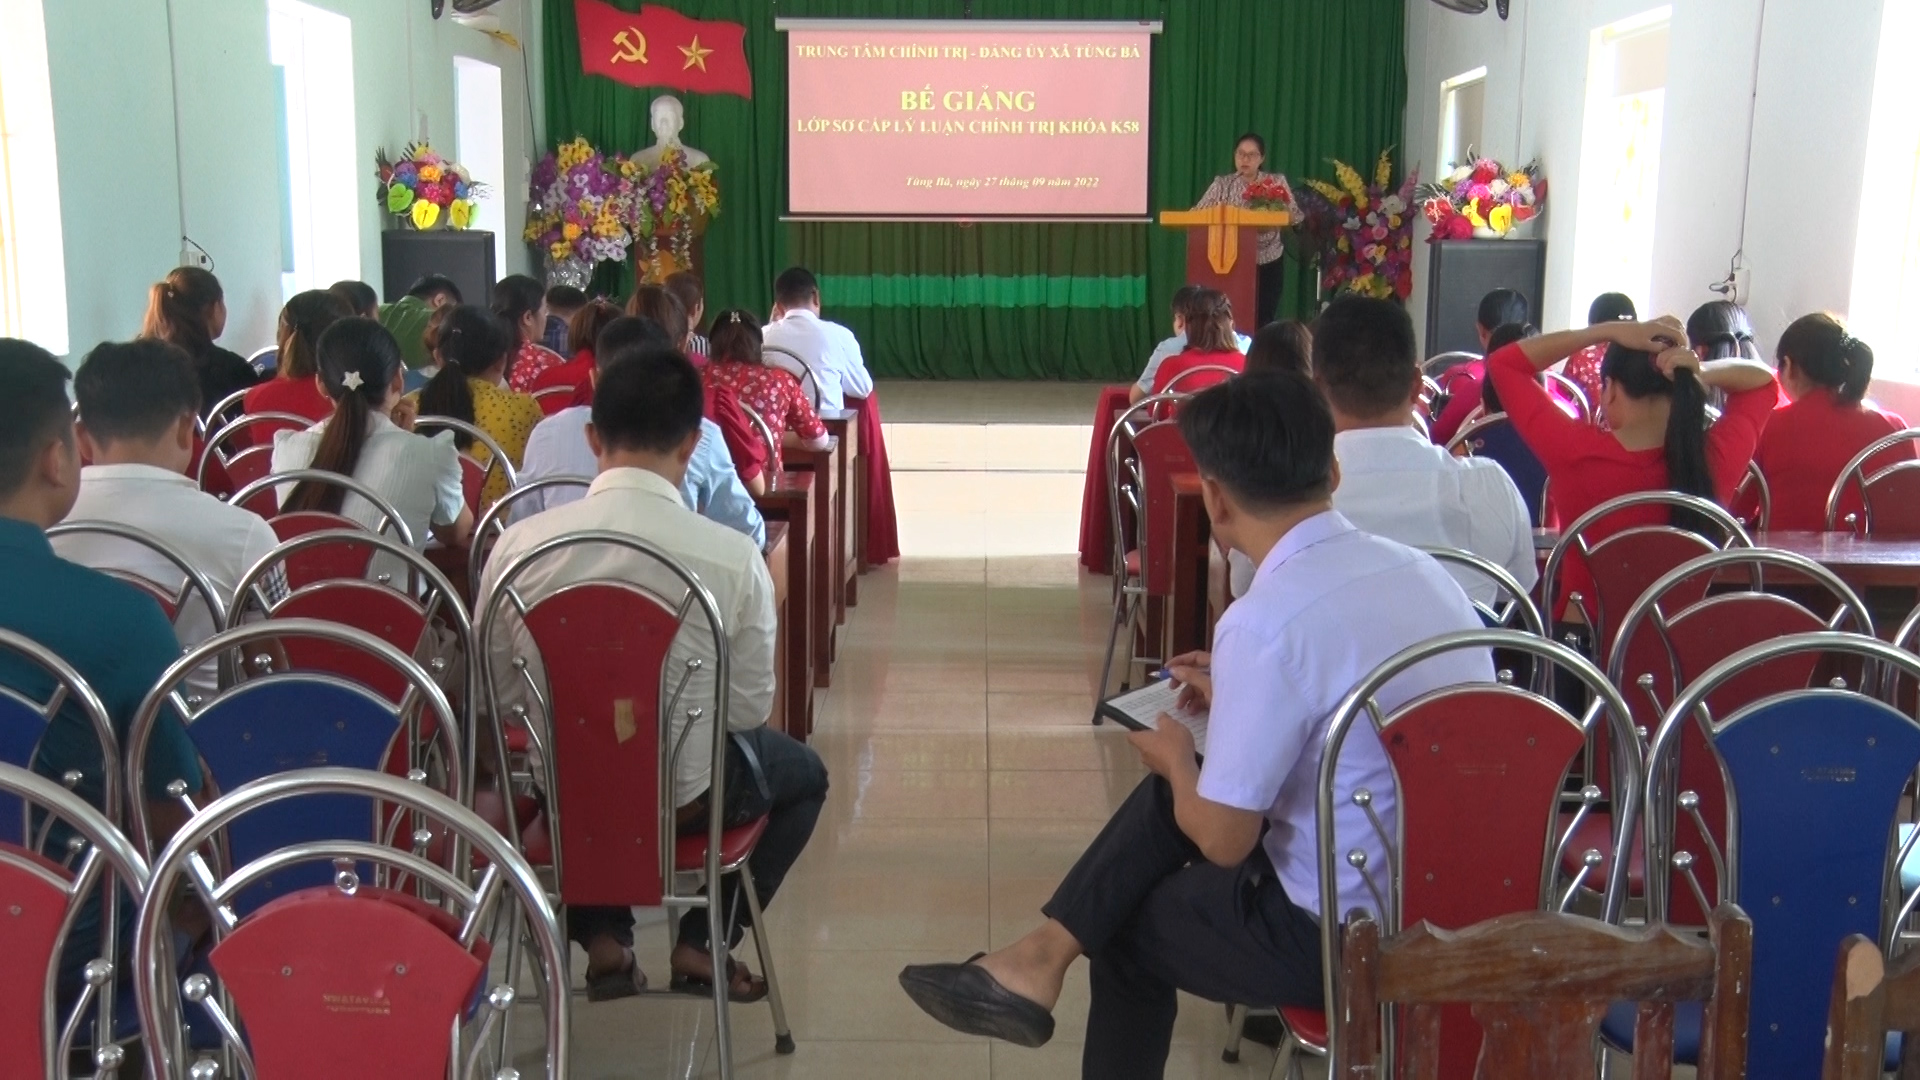 Bế giảng lớp Sơ cấp Lý luận chính trị khóa 58 tại xã Tùng Bá